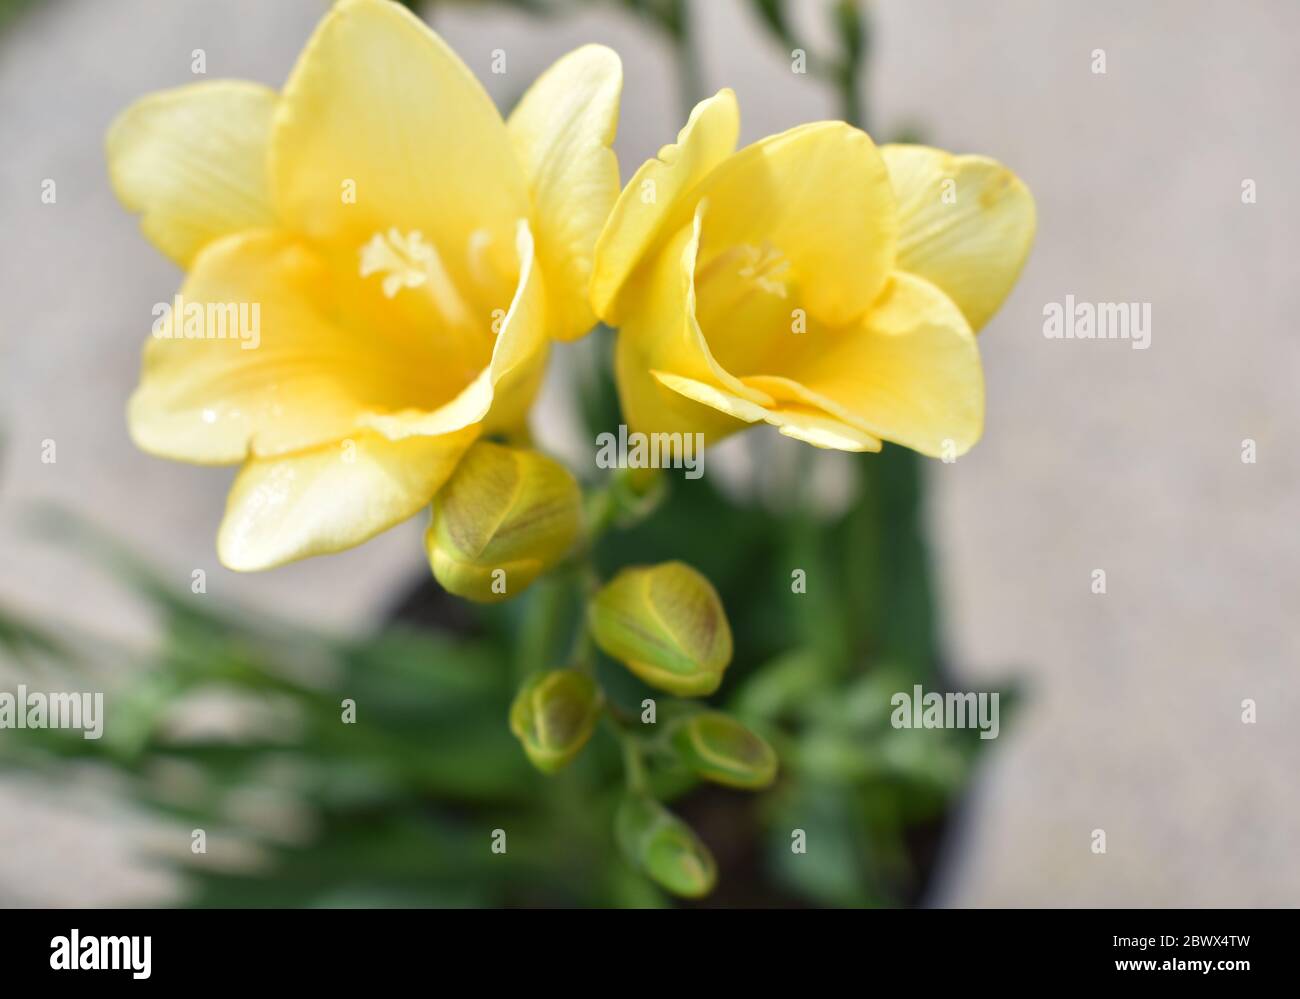 Strahlender Sonnenschein gelbe Freesias mit prominenter Stigma und Knospen mit verschwommenem Hintergrund Stockfoto